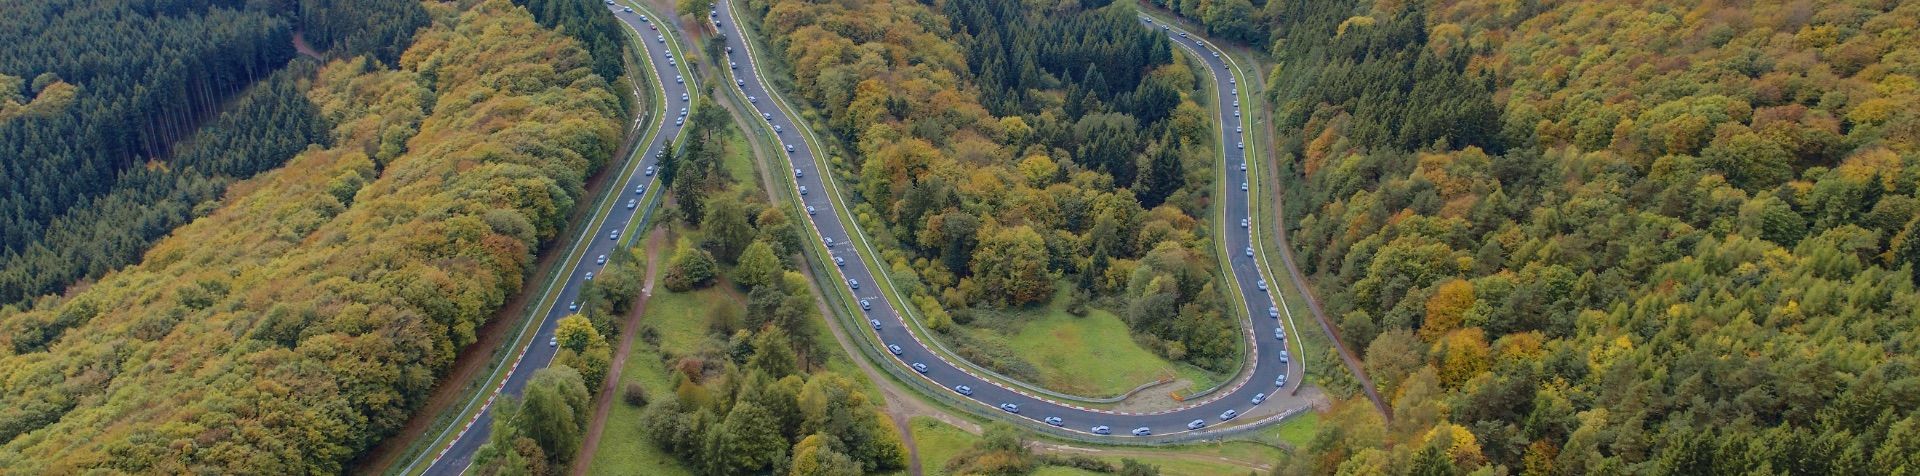 Aerial view of the Nürburgring in Germany